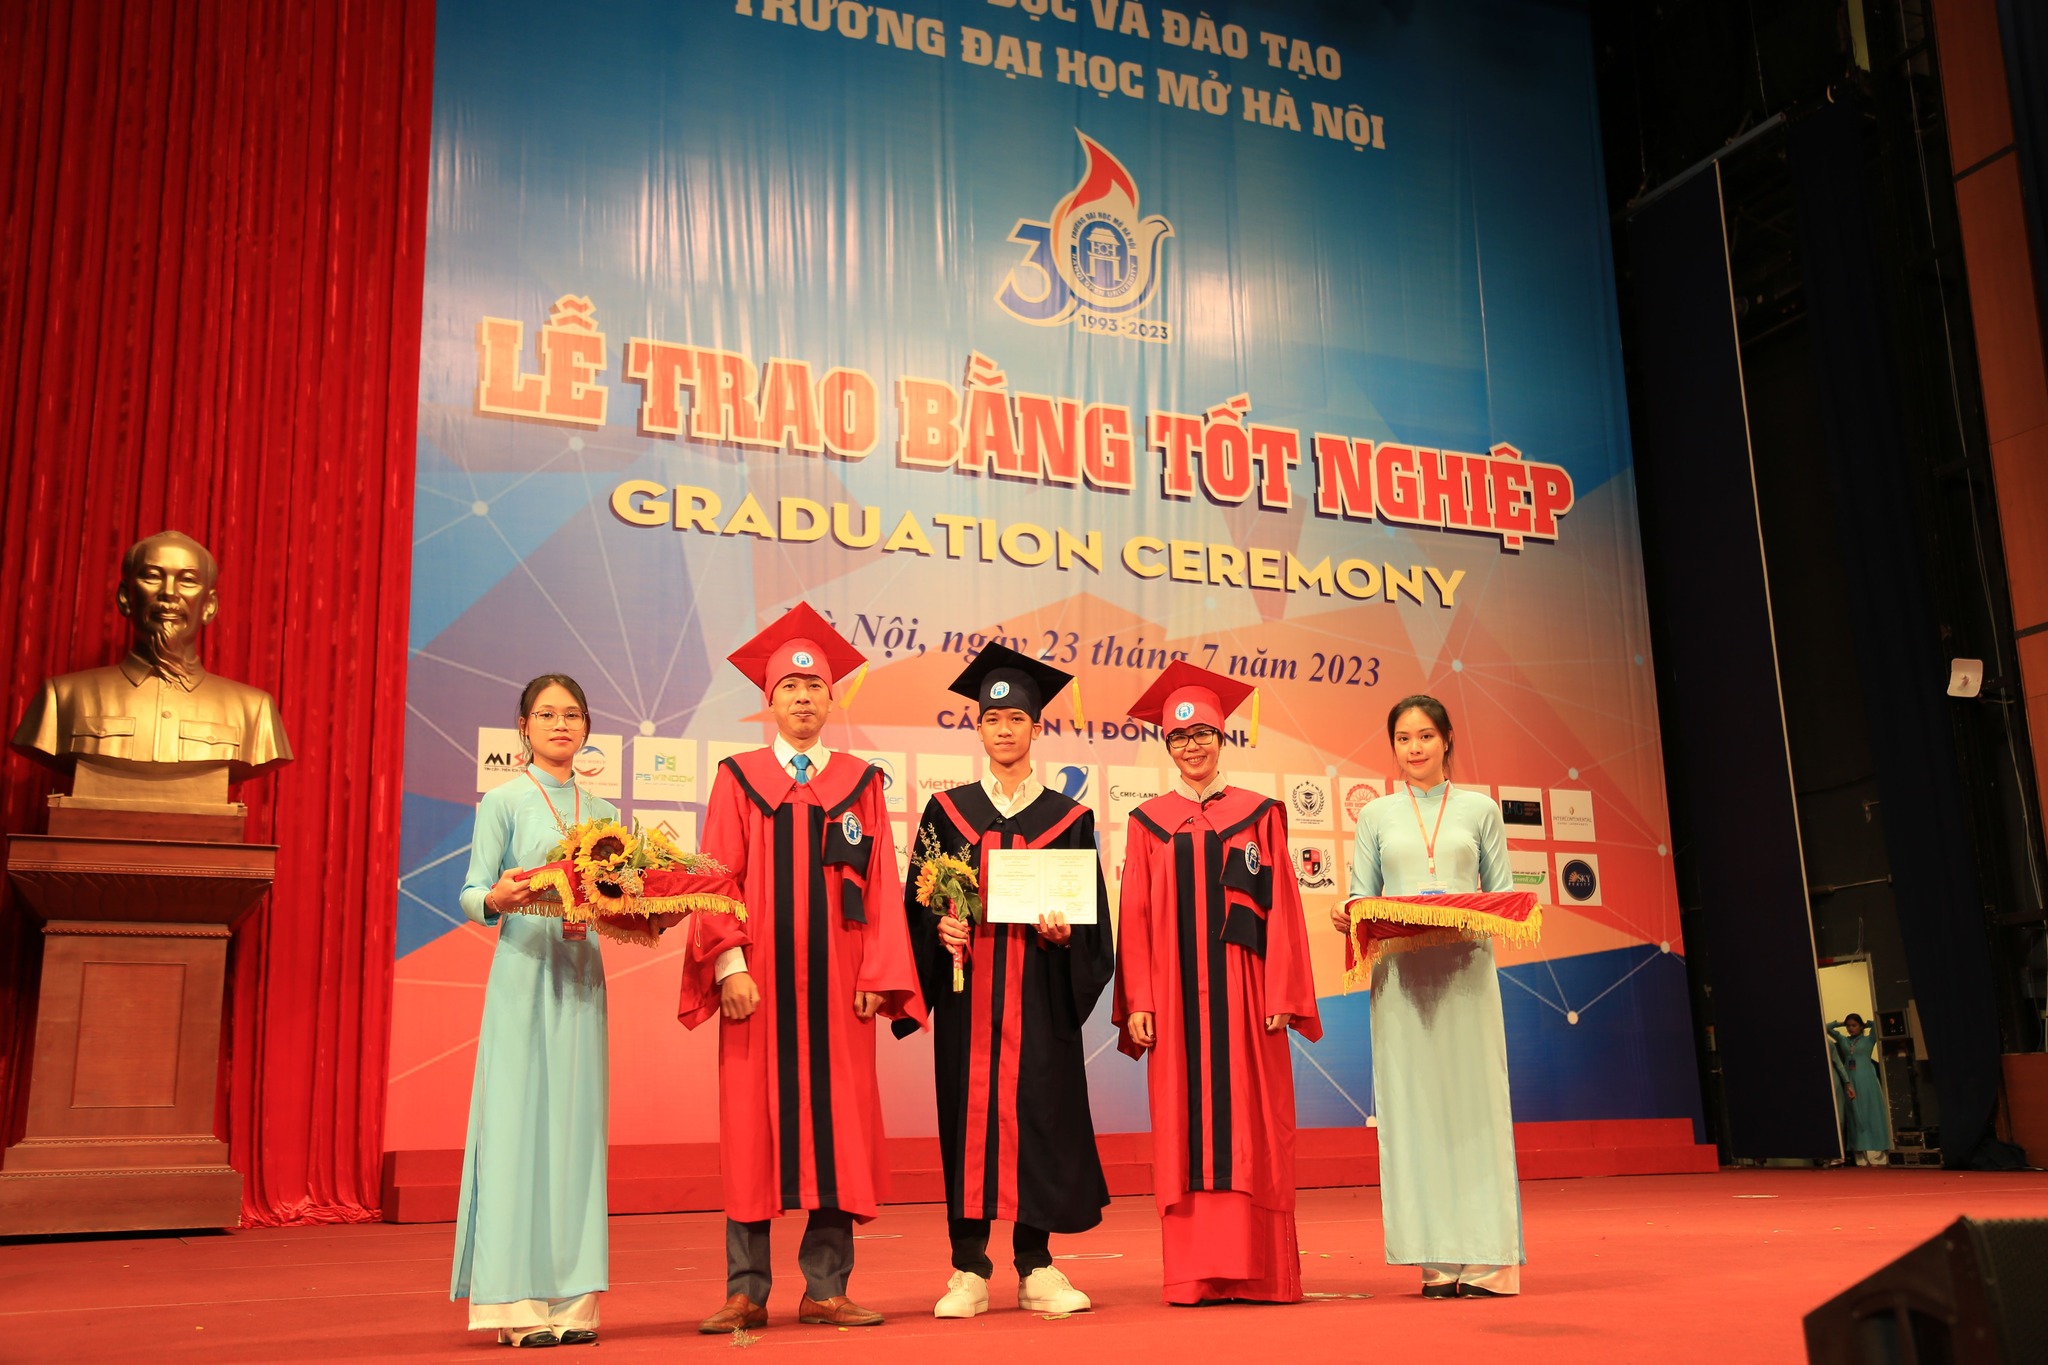 Điểm chuẩn Đại học Mở Hà Nội năm 2023 chính xác